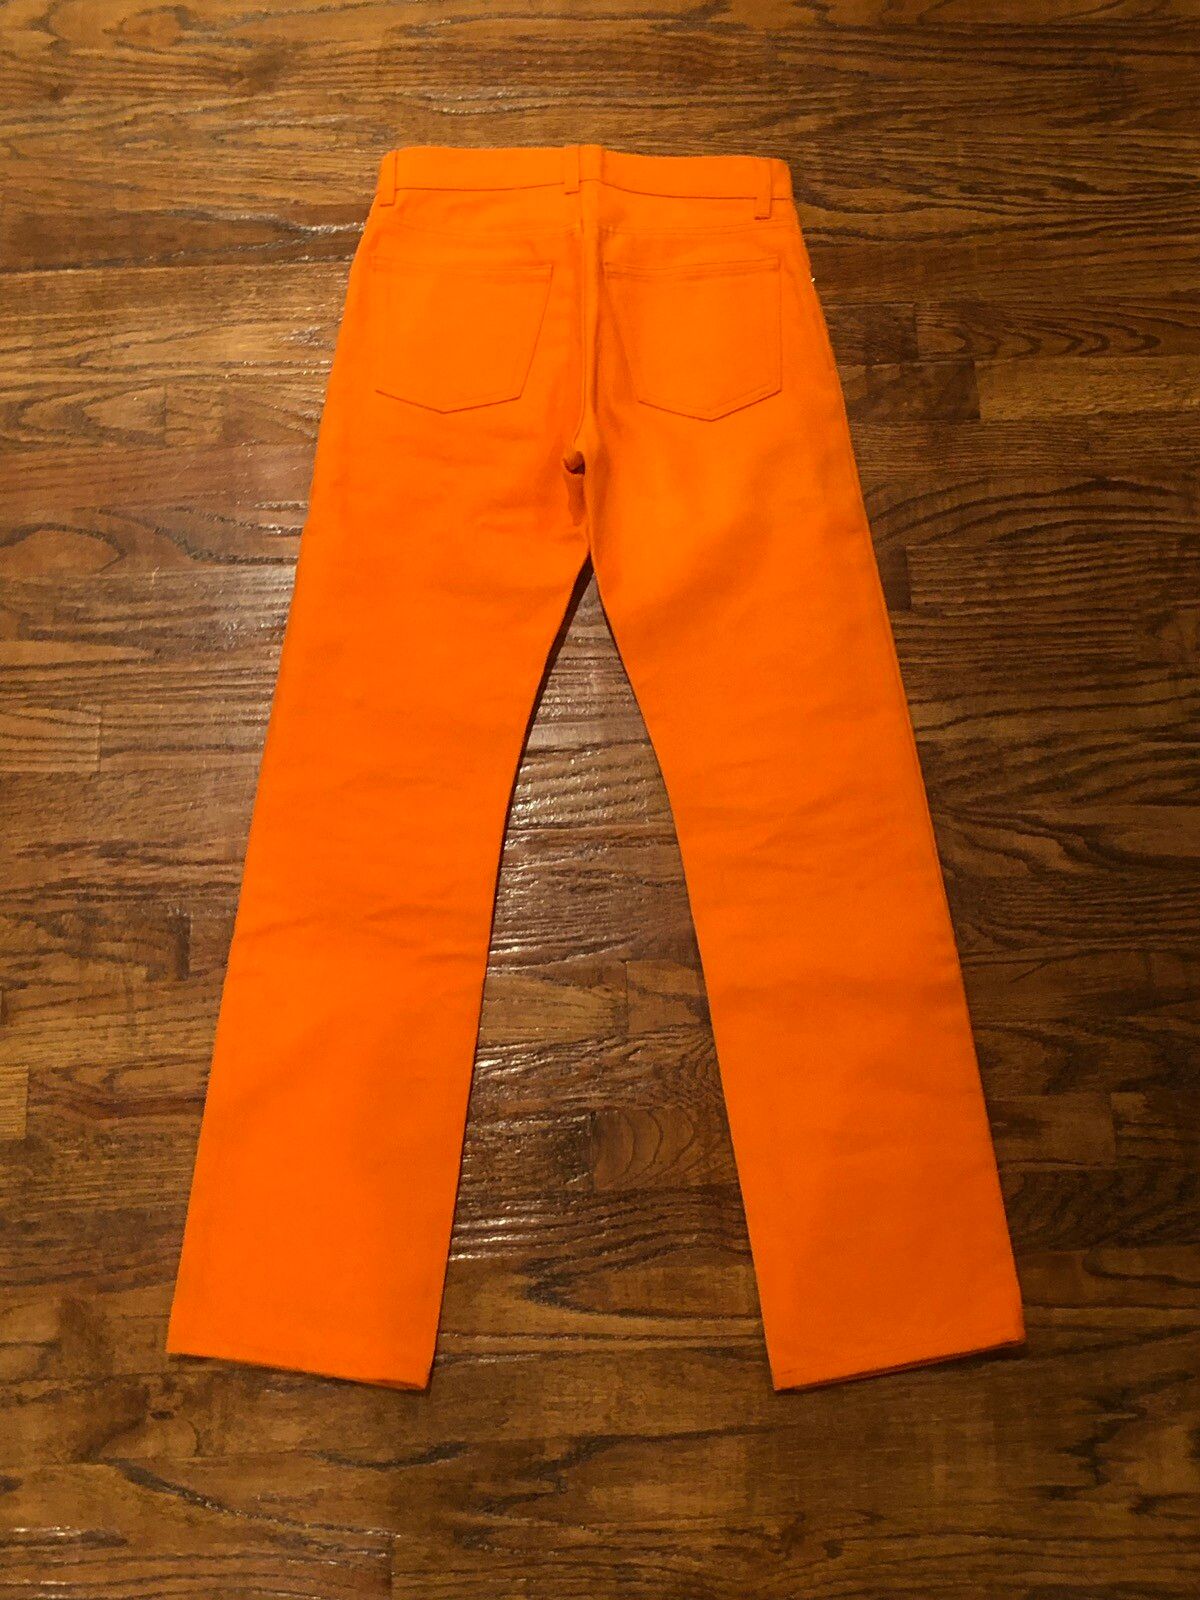 Helmut Lang Helmut Lang Safety Orange Raw Denim Jeans Size US 28 / EU 44 - 2 Preview